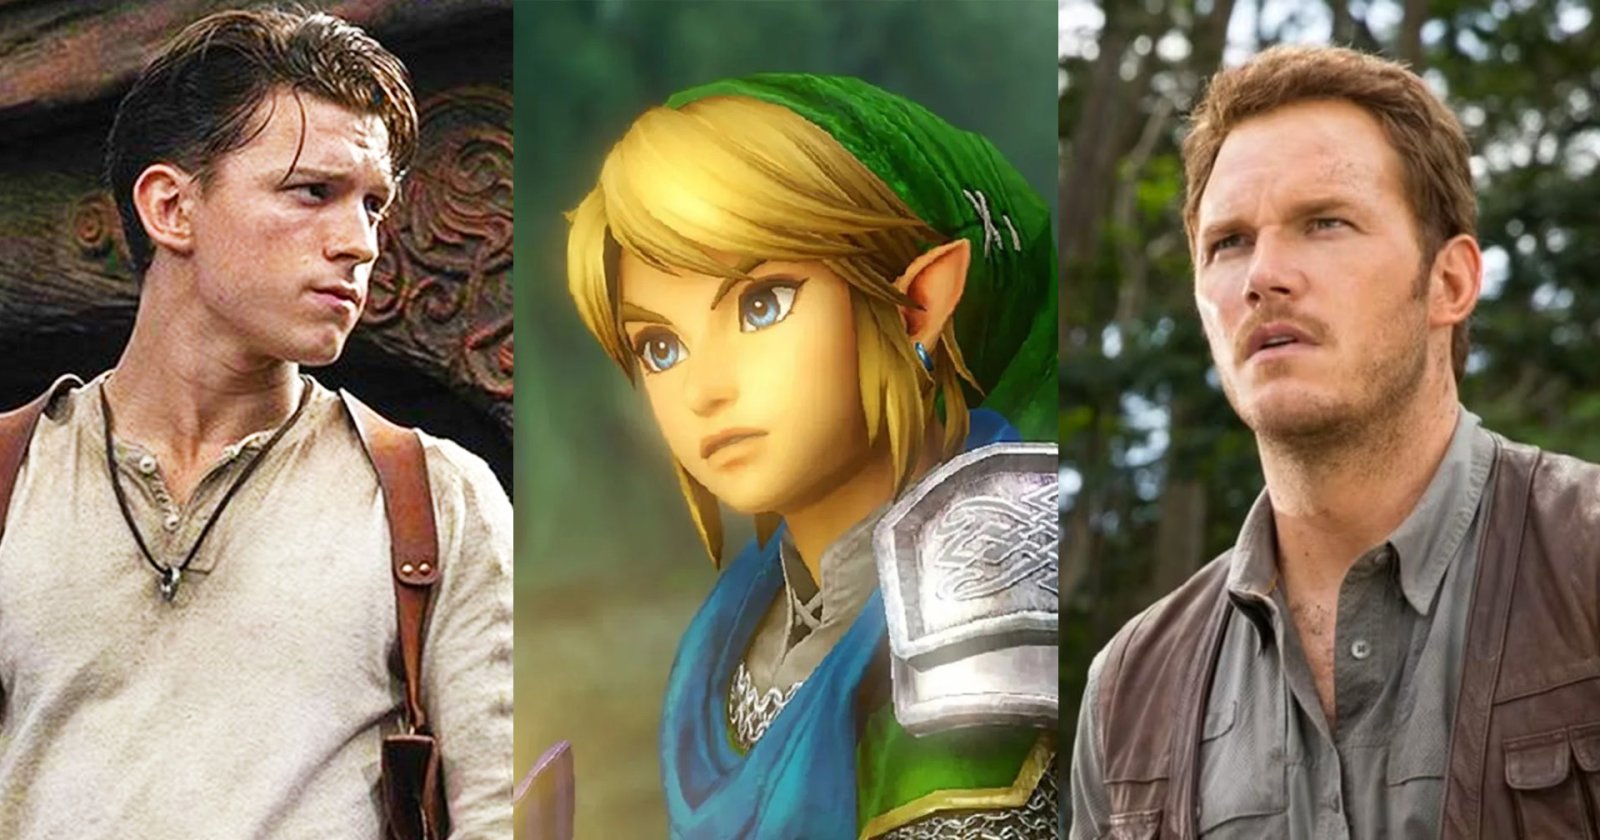 ชาวเน็ตแซวหนัก เรียกร้องให้ Tom Holland และ Chirs Pratt เป็นดารานำในหนัง ‘The Legend of Zelda’